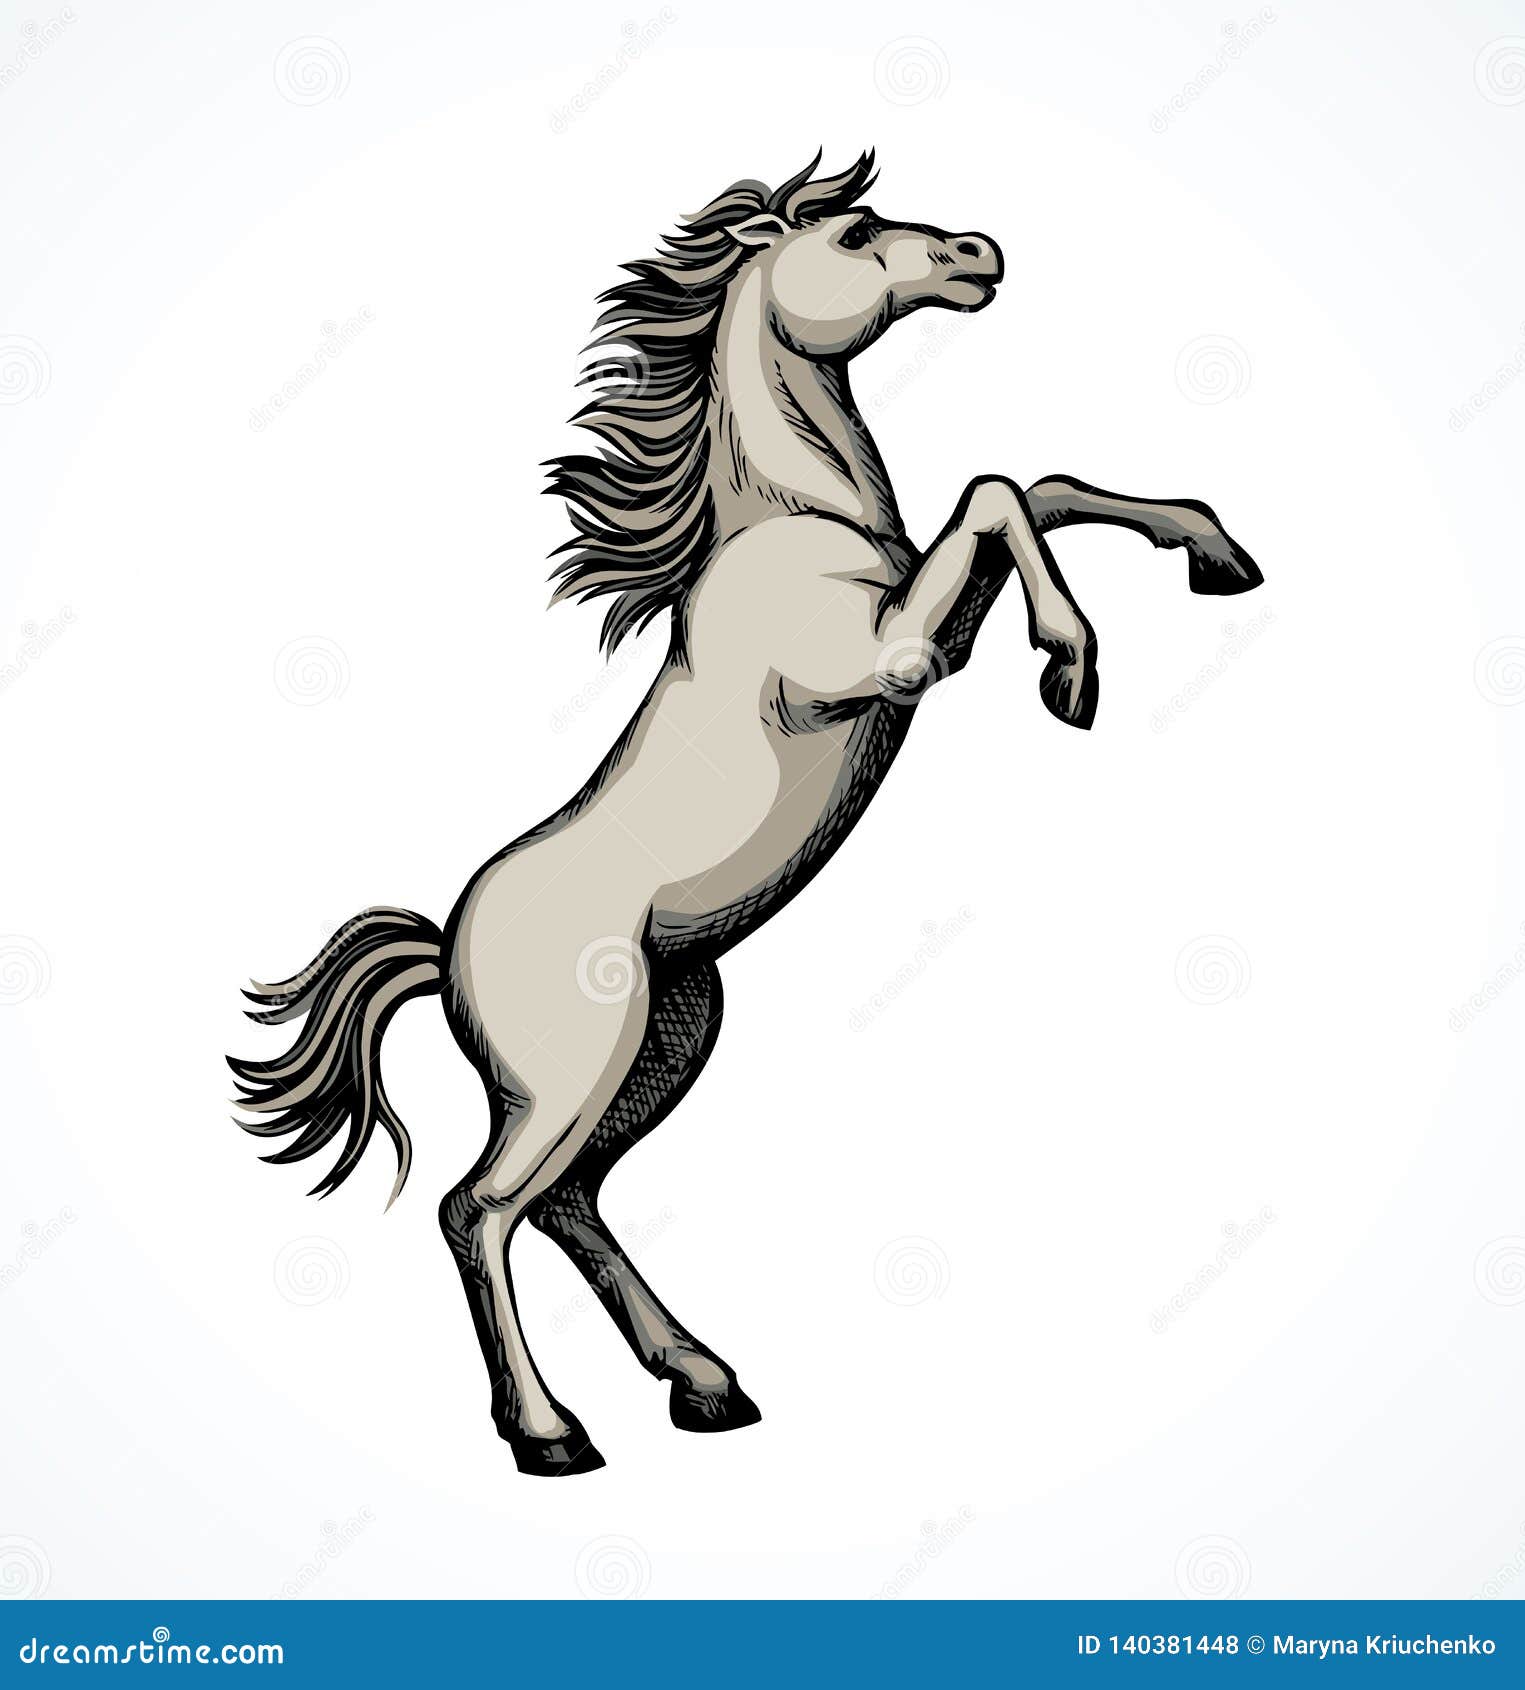 Como desenhar um cavalo em cinco passos